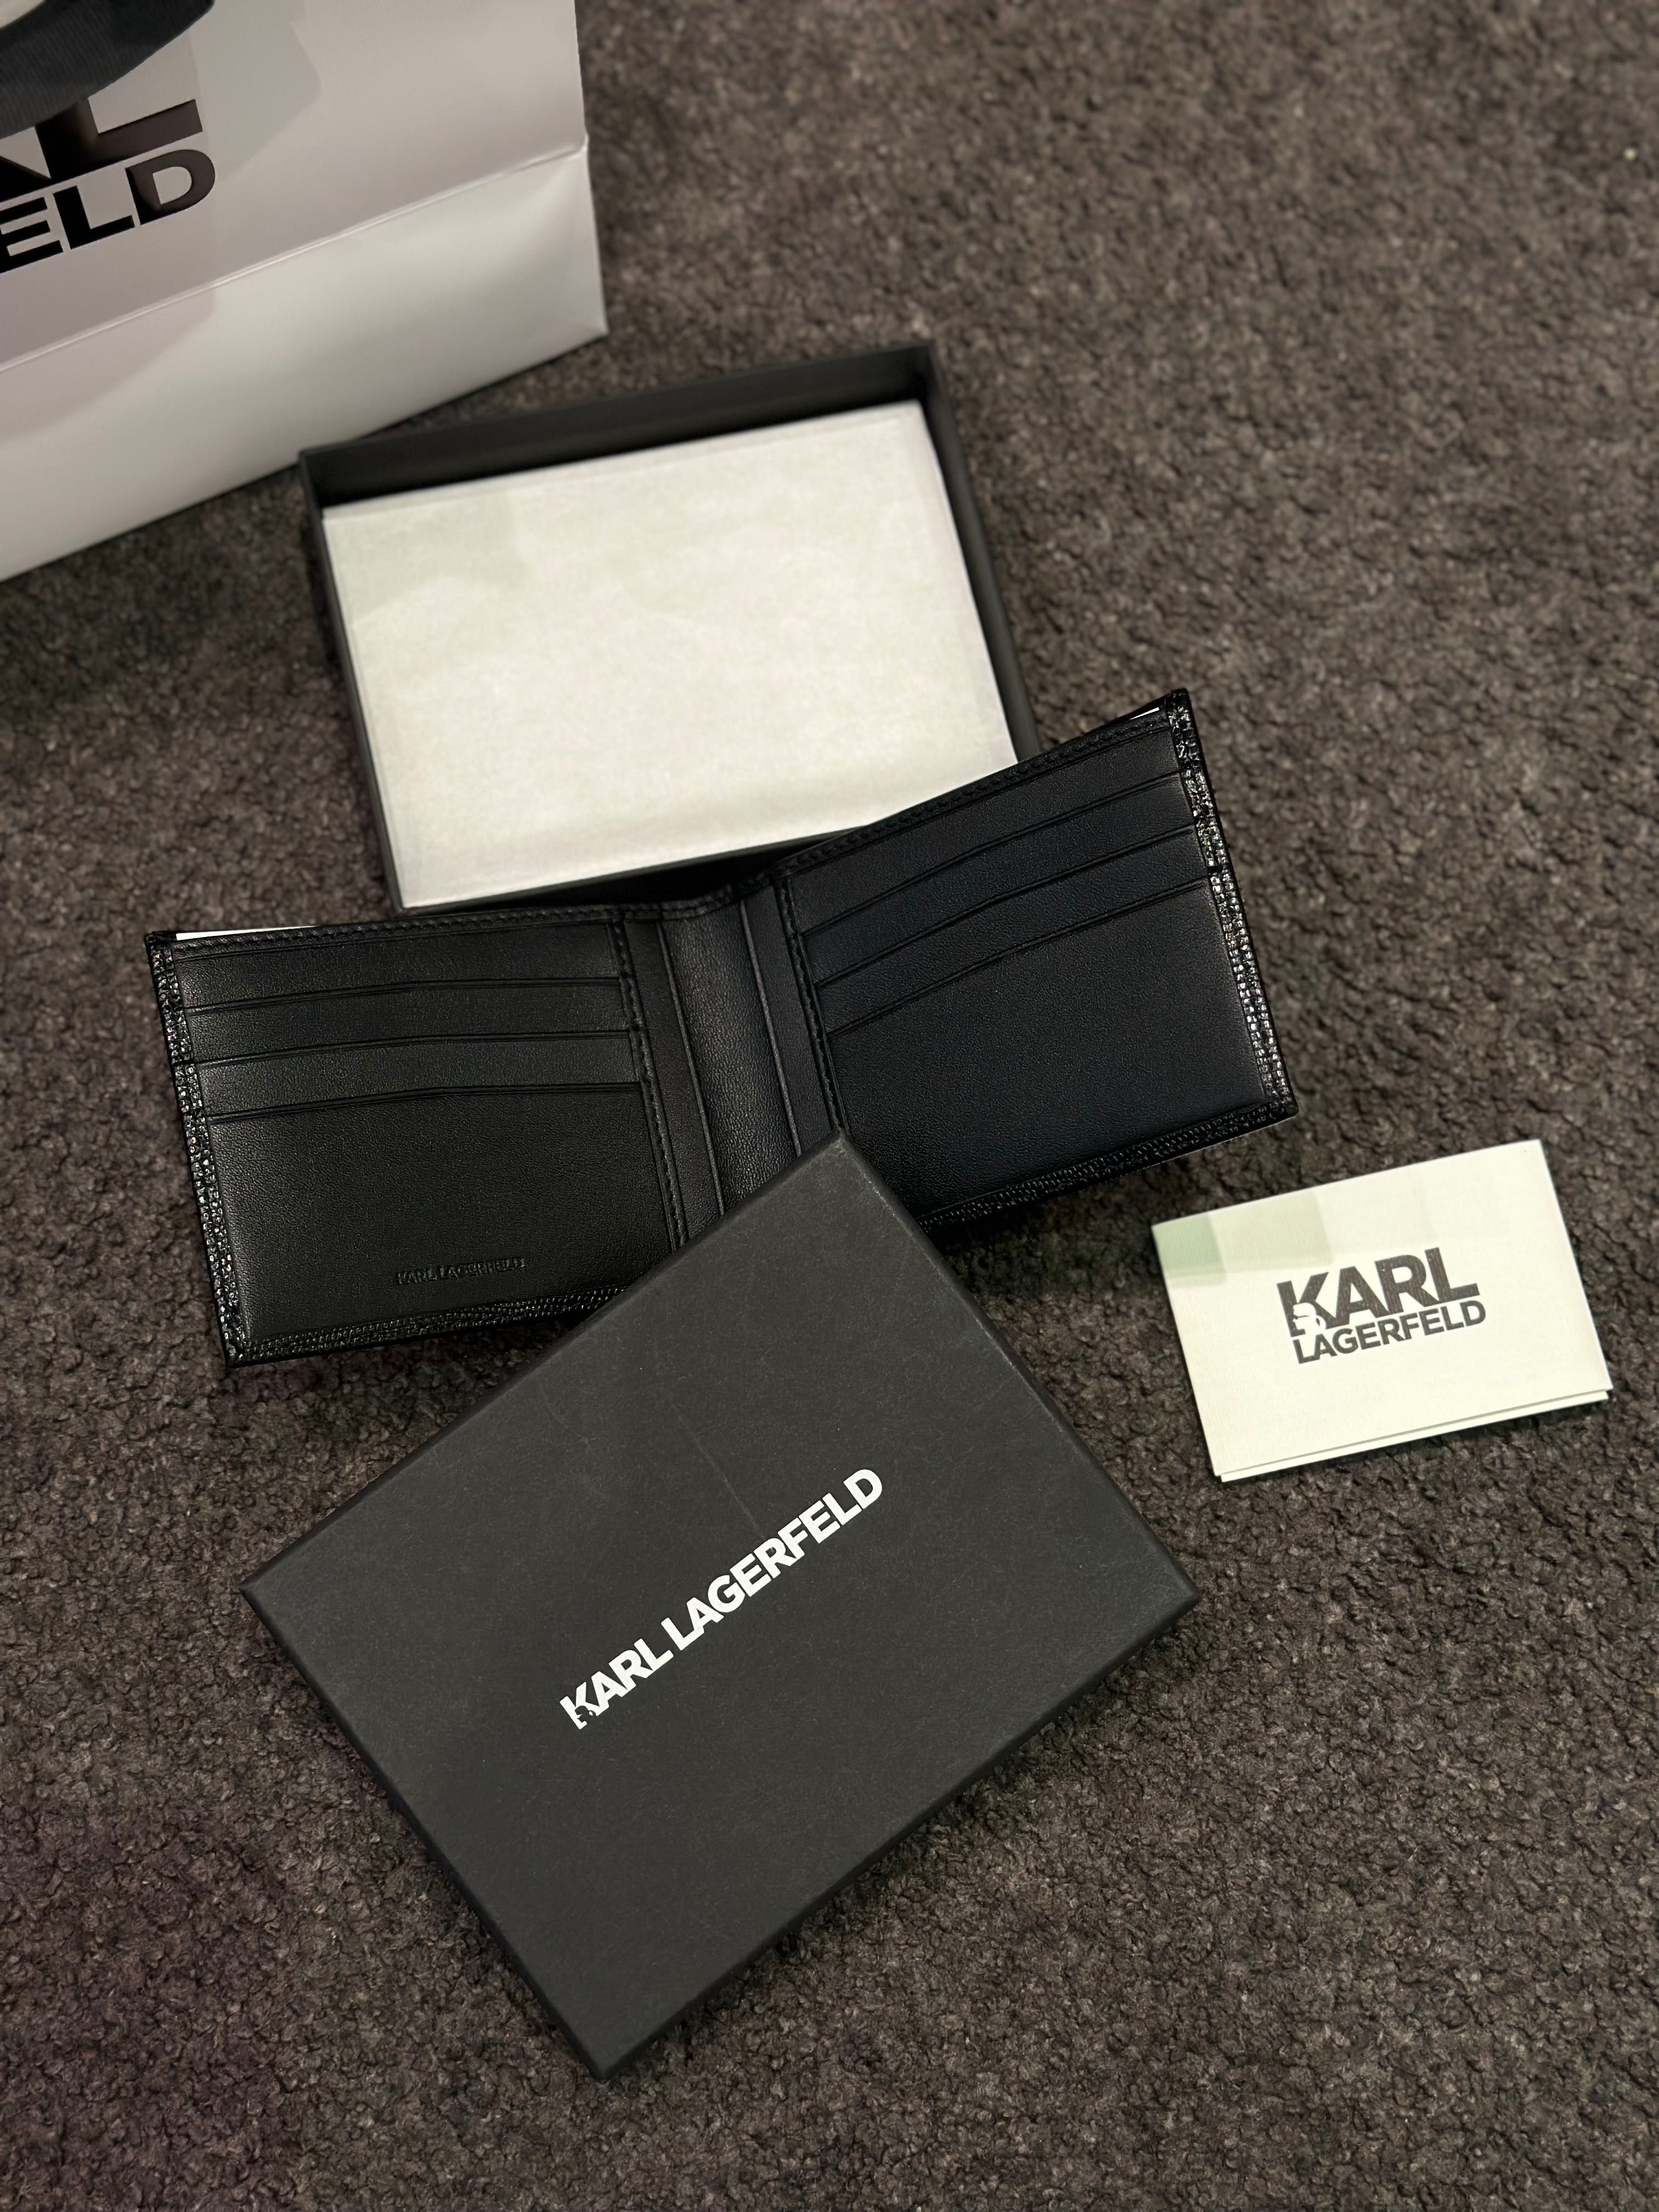 Czarny Skórzany portfel Karl Lagerfeld nowy oryginalny w kartoniku HIT